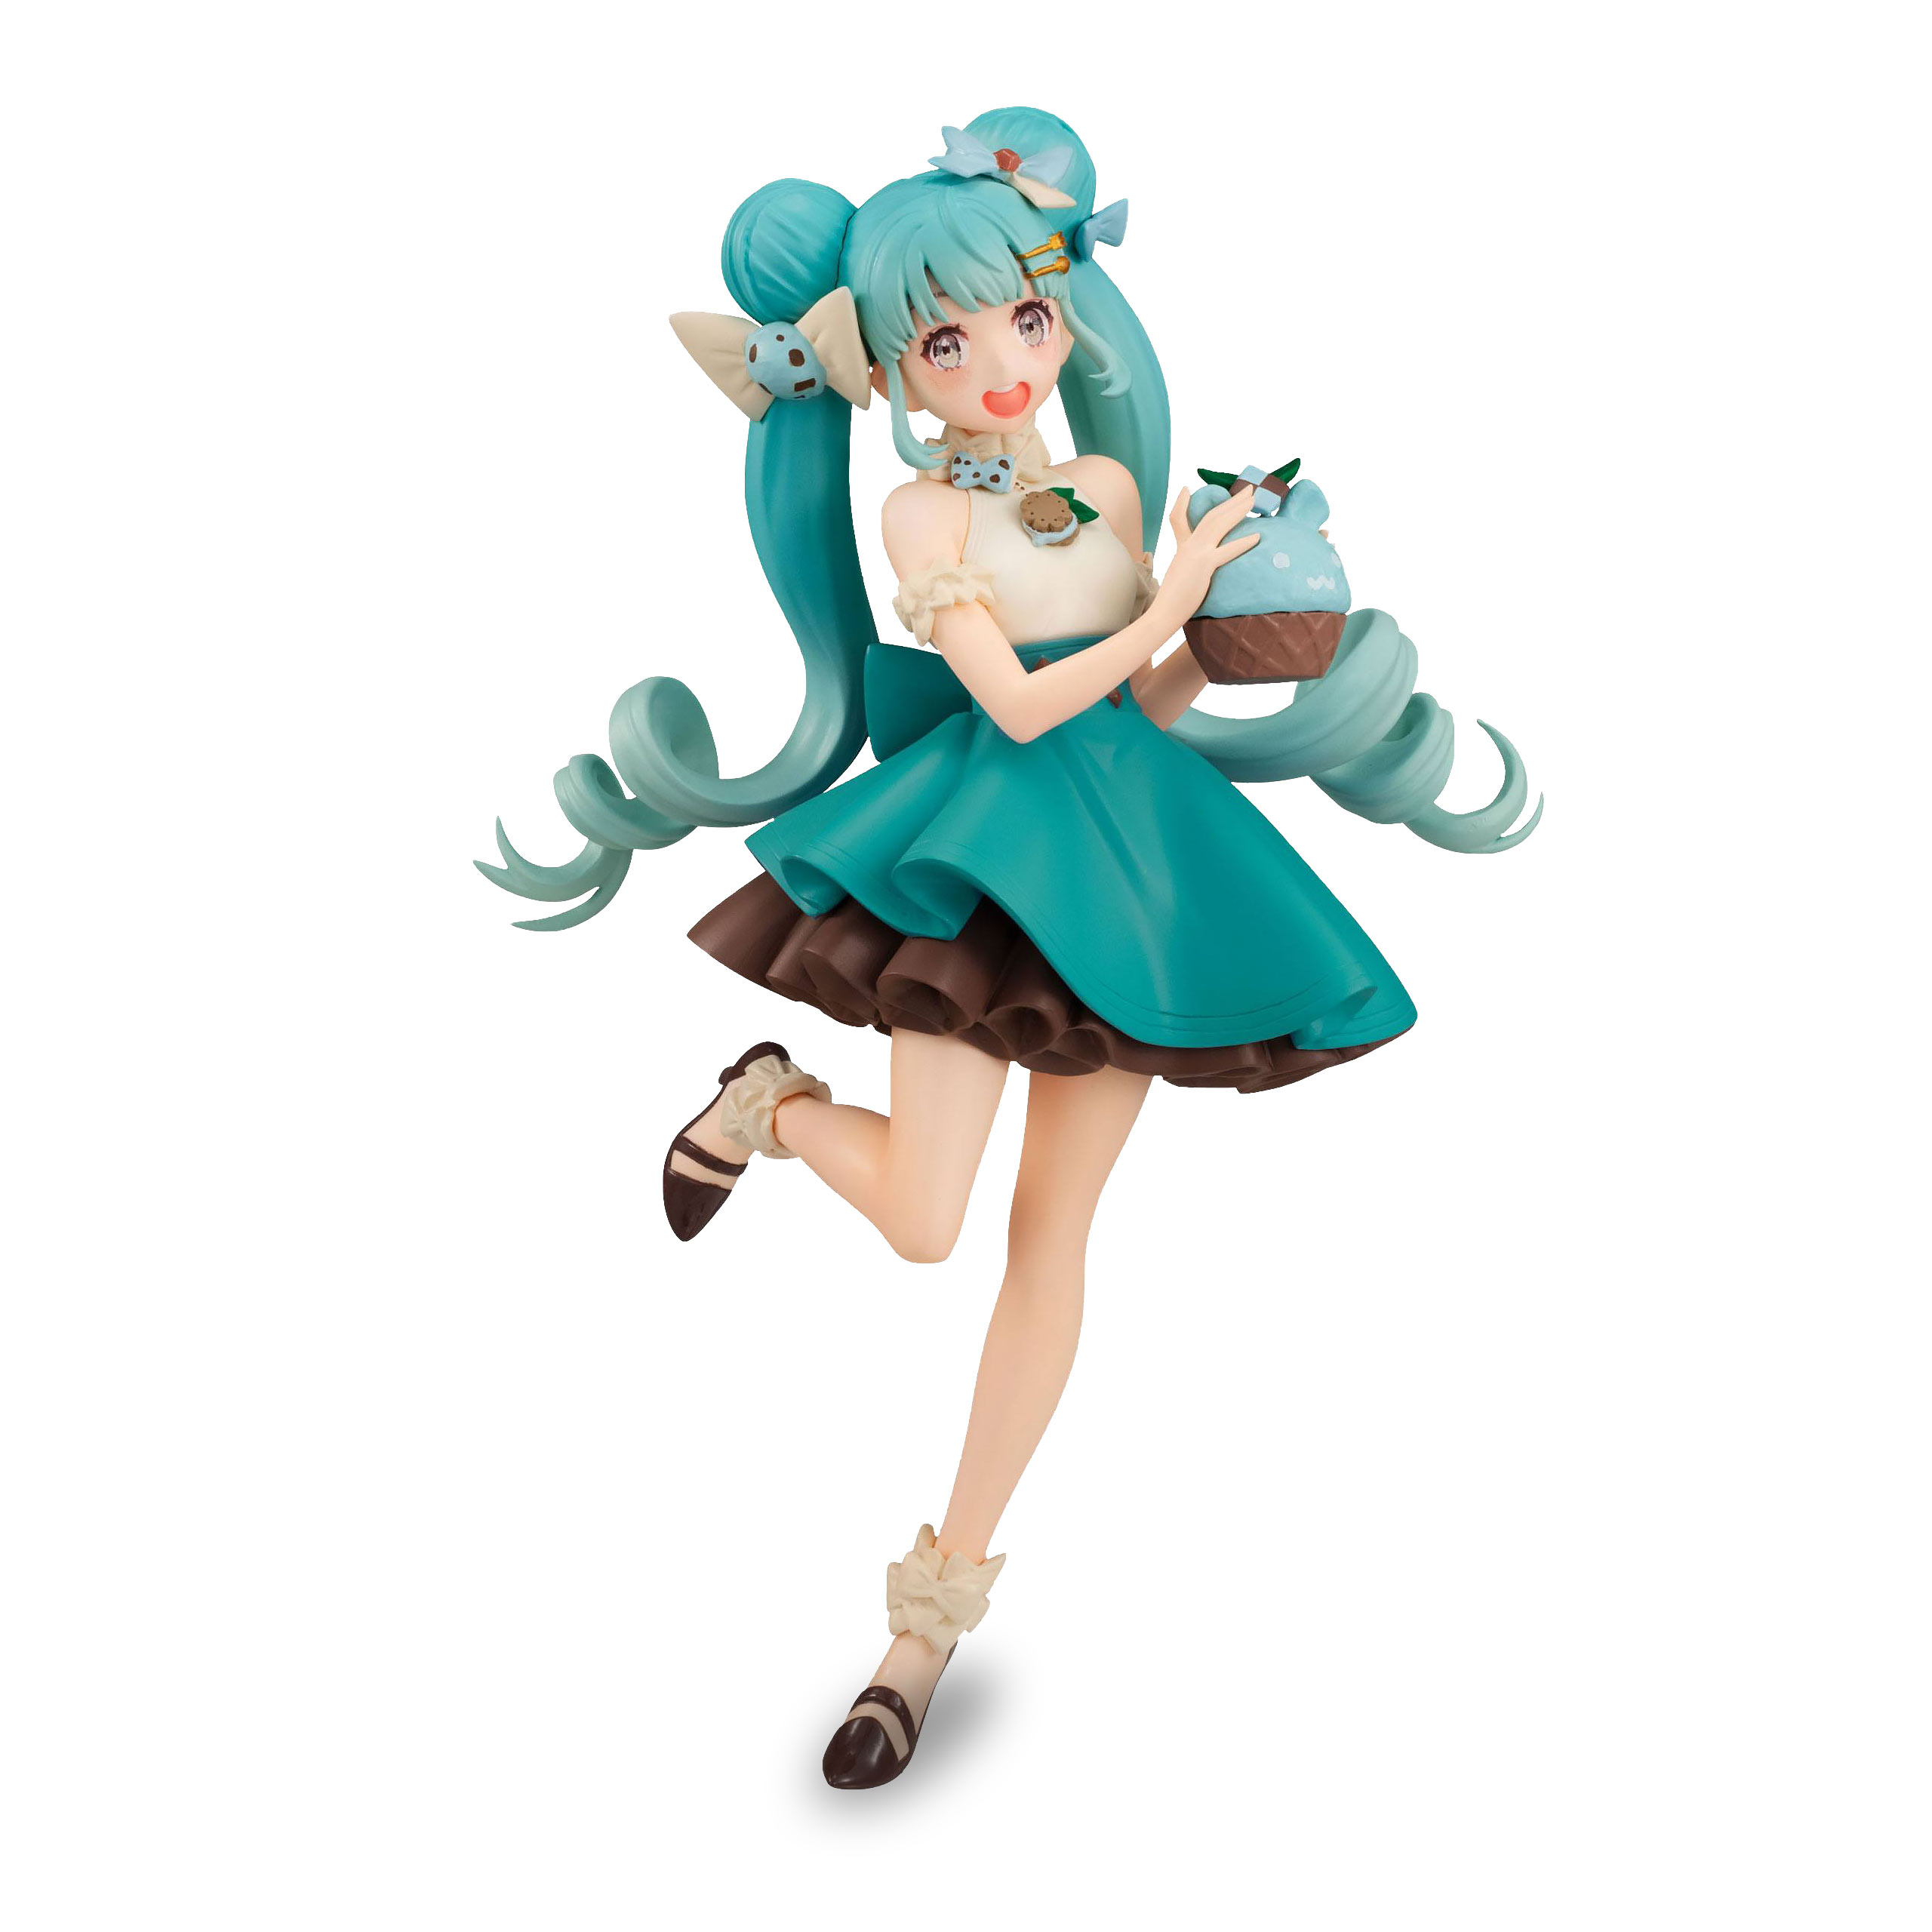 Hatsune Miku - Figurine SweetSweets Choco Mint